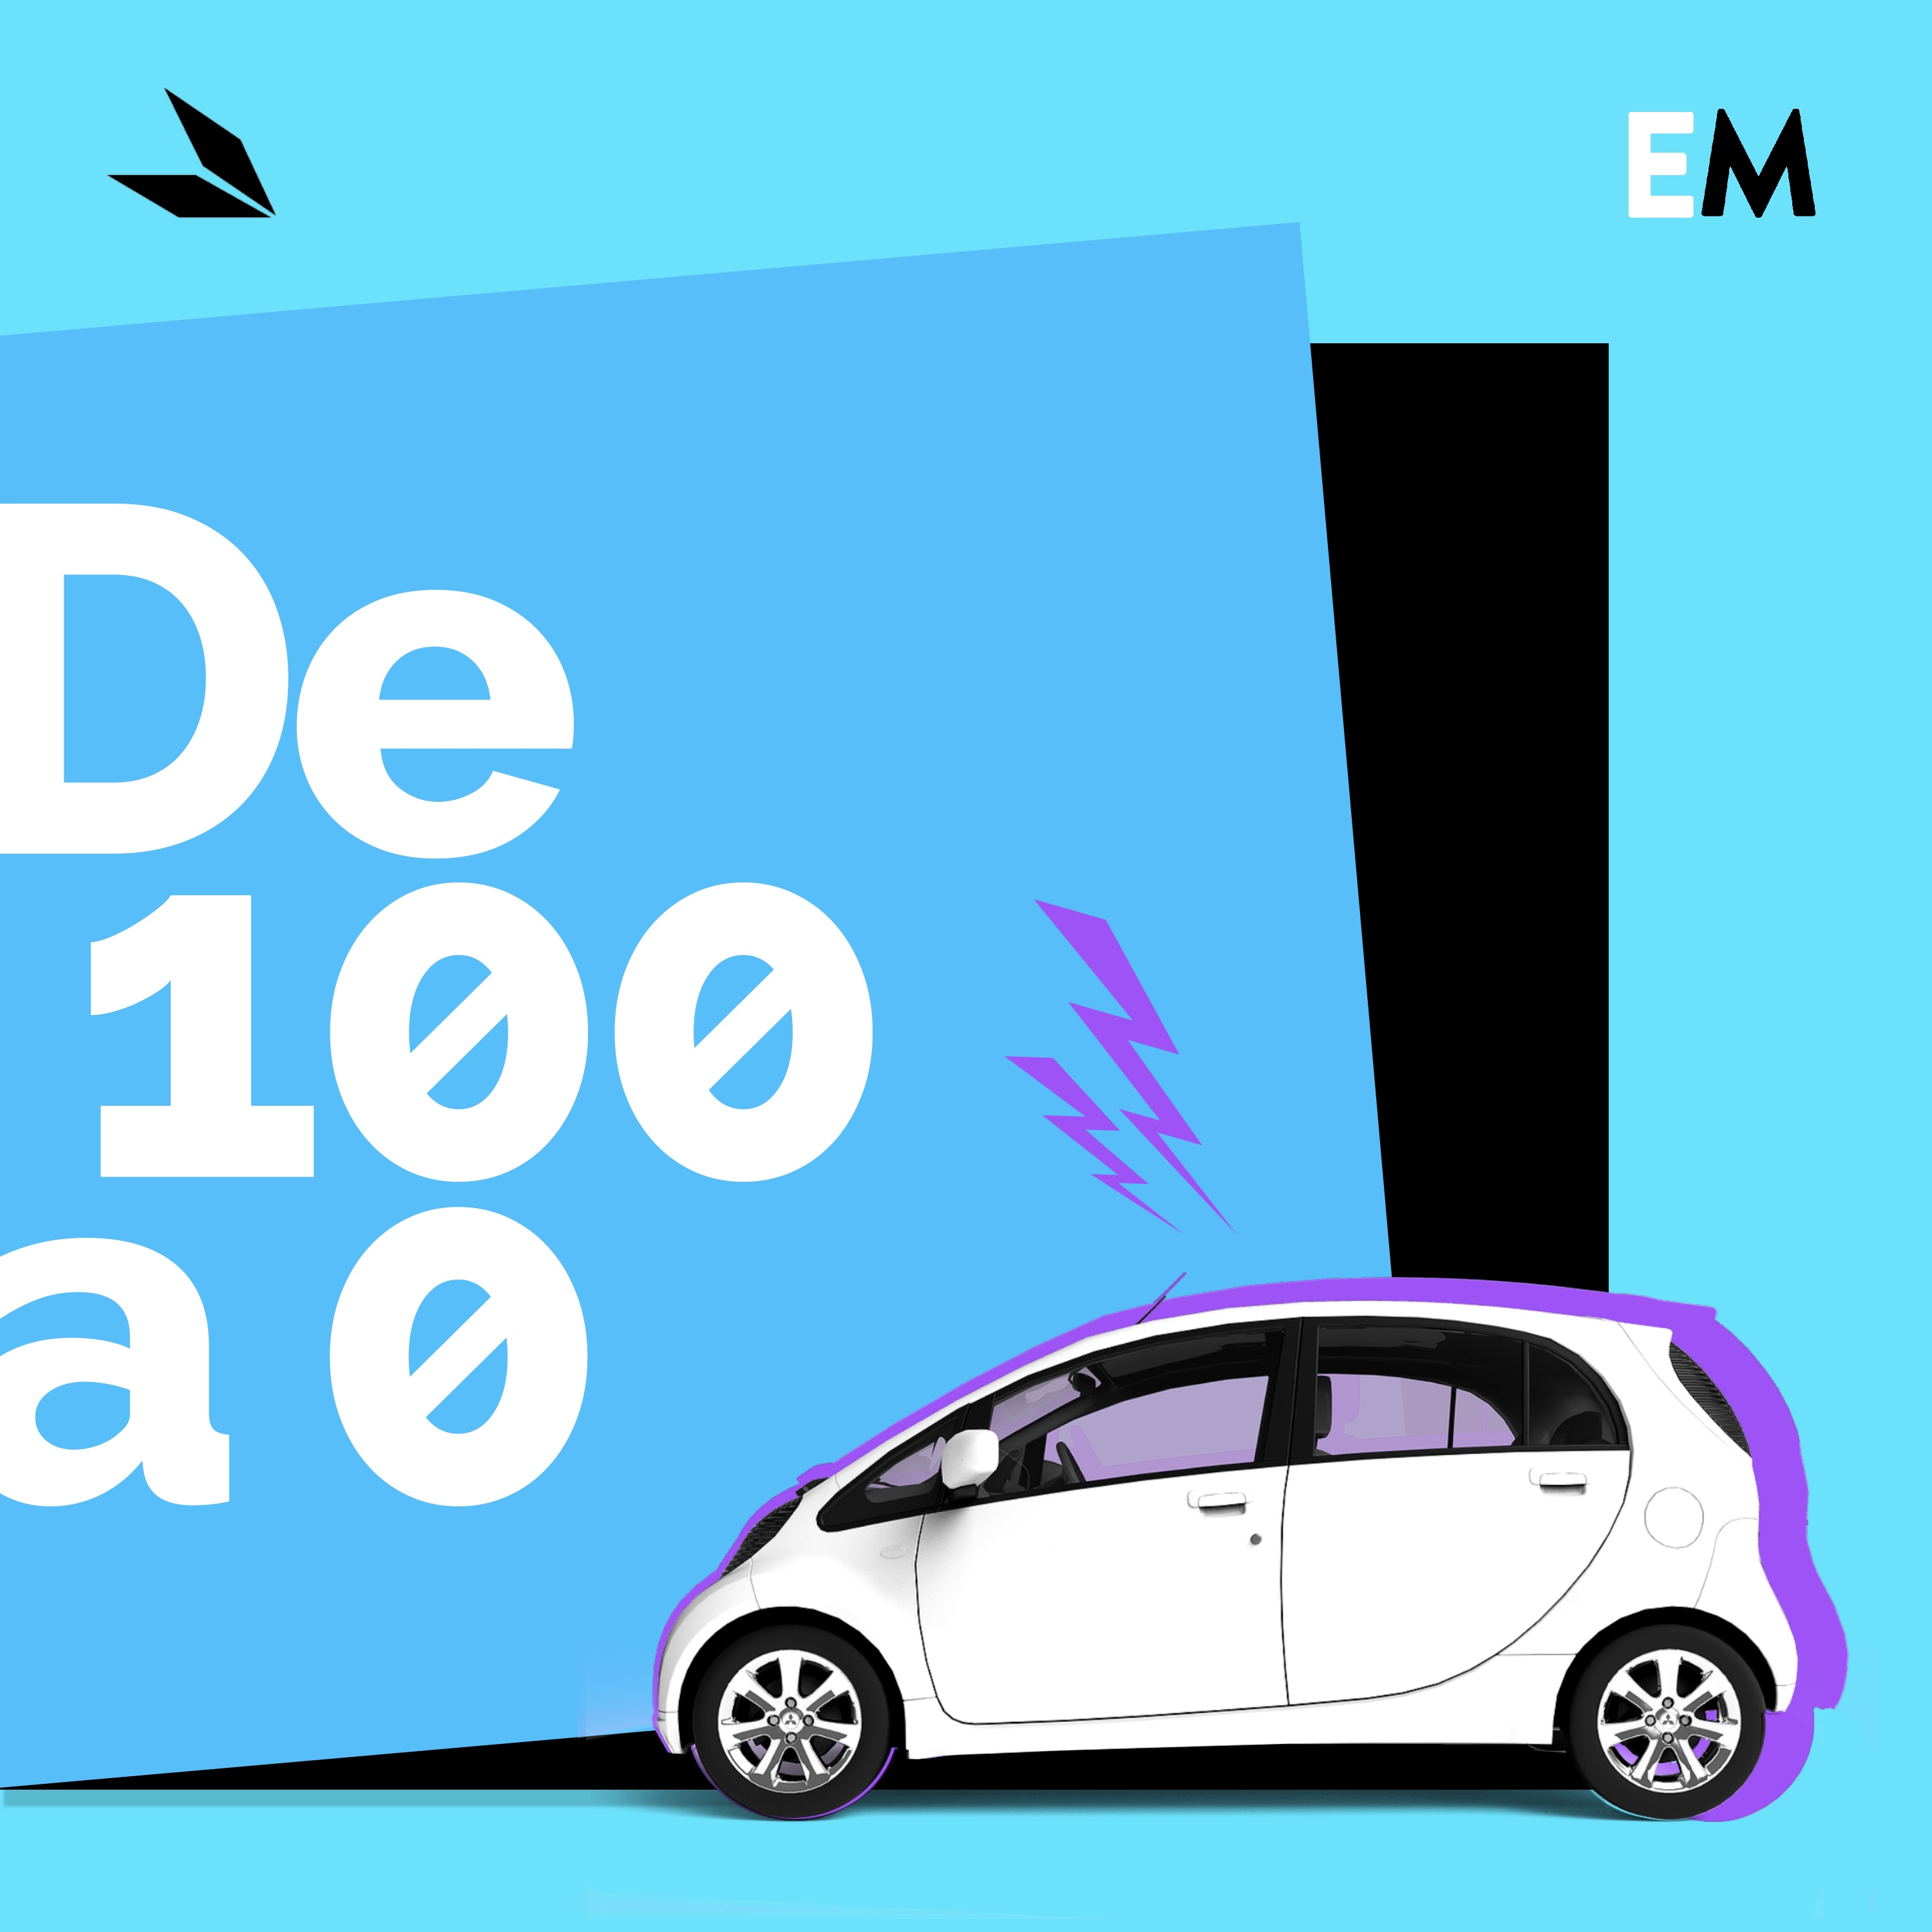 Episodio 109. ¿Cuáles son las autopistas más caras de España?